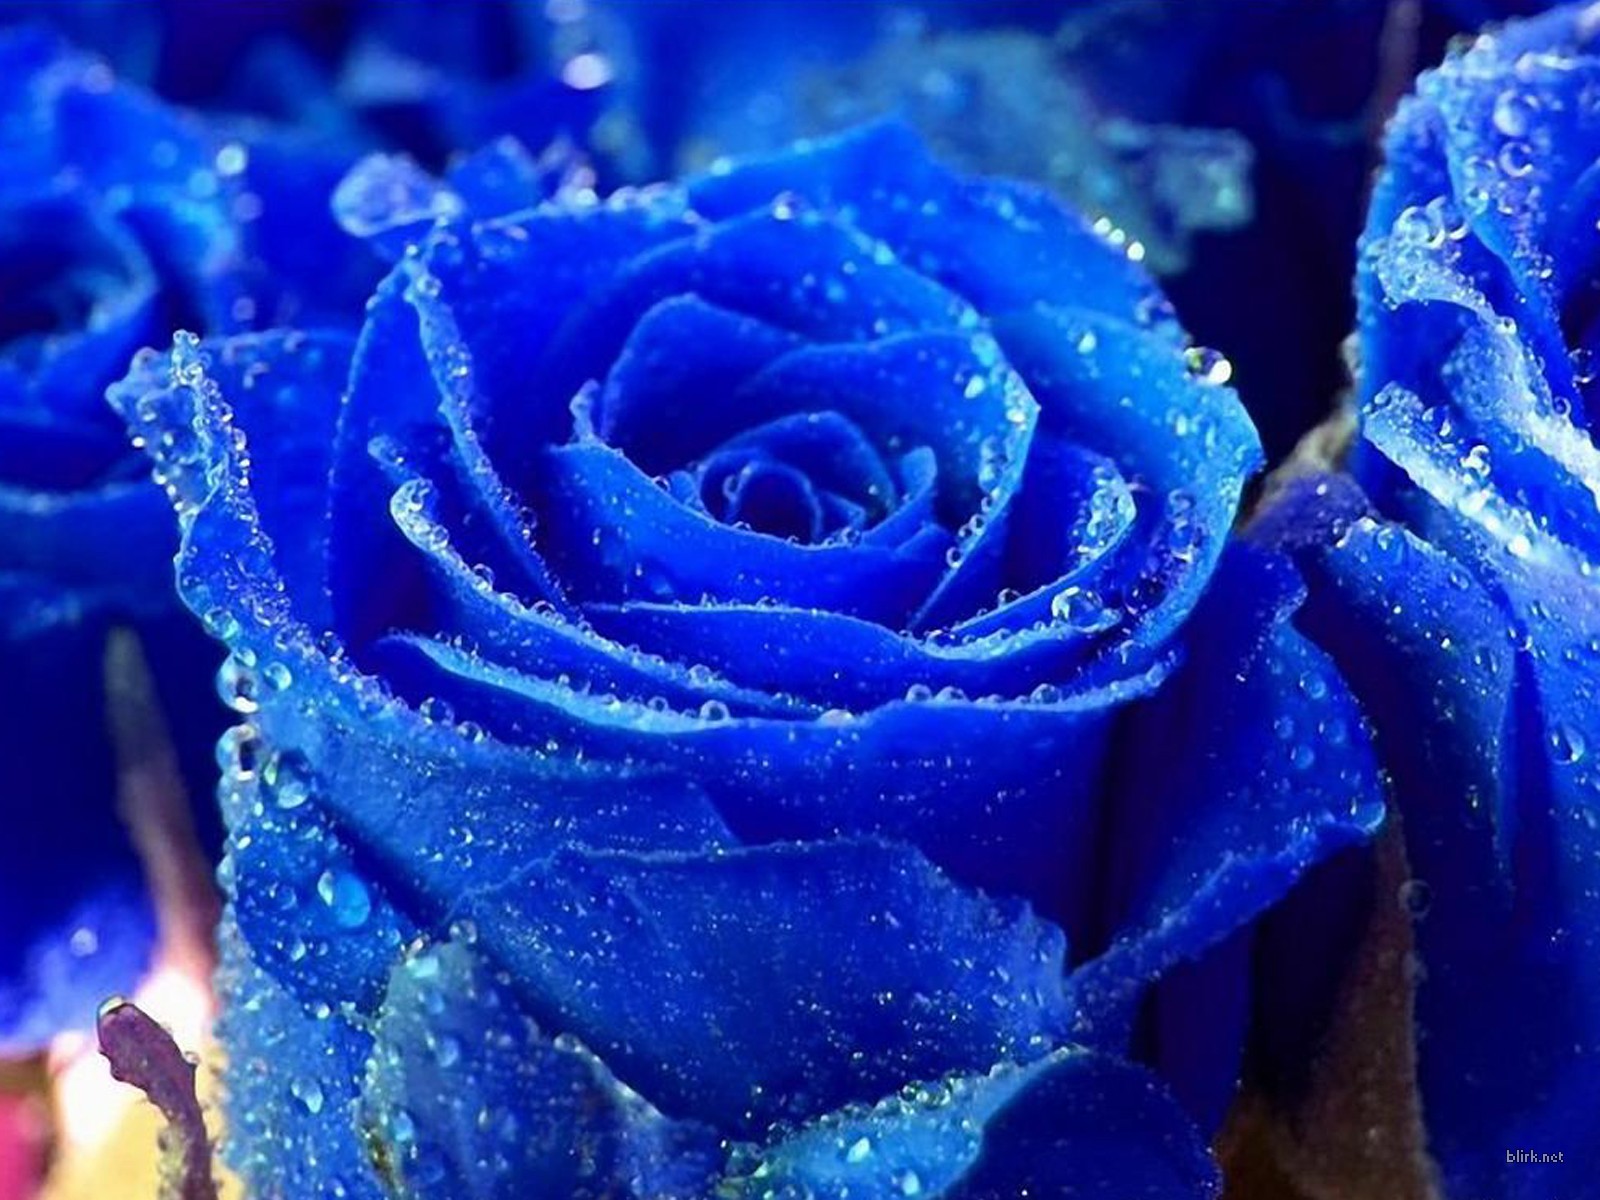 Blue Rose Flower: Bạn đã từng nhìn thấy hoa hồng màu xanh chưa? Nó thật độc đáo và đẹp mắt lắm đấy. Hãy nhấp chuột để ngắm nhìn sự tinh khiết và mạnh mẽ của loài hoa xinh đẹp này.